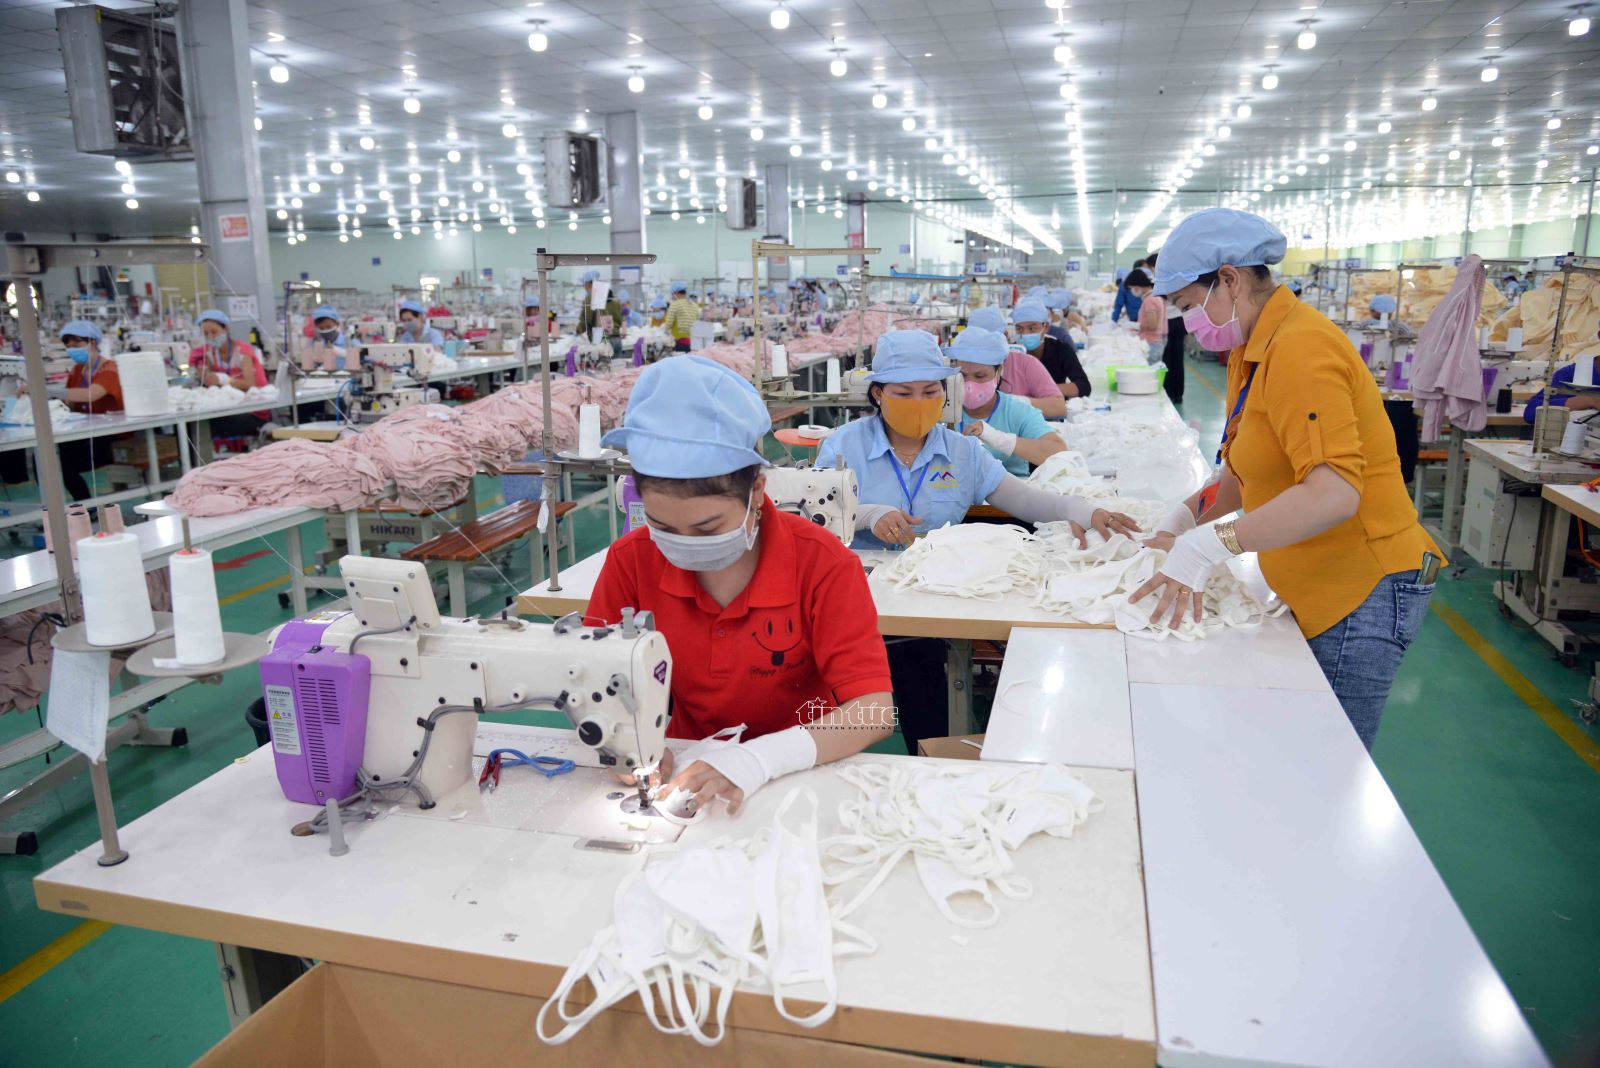 Cơ hội trước mắt cho khẩu trang vải Việt Nam xuất ngoại